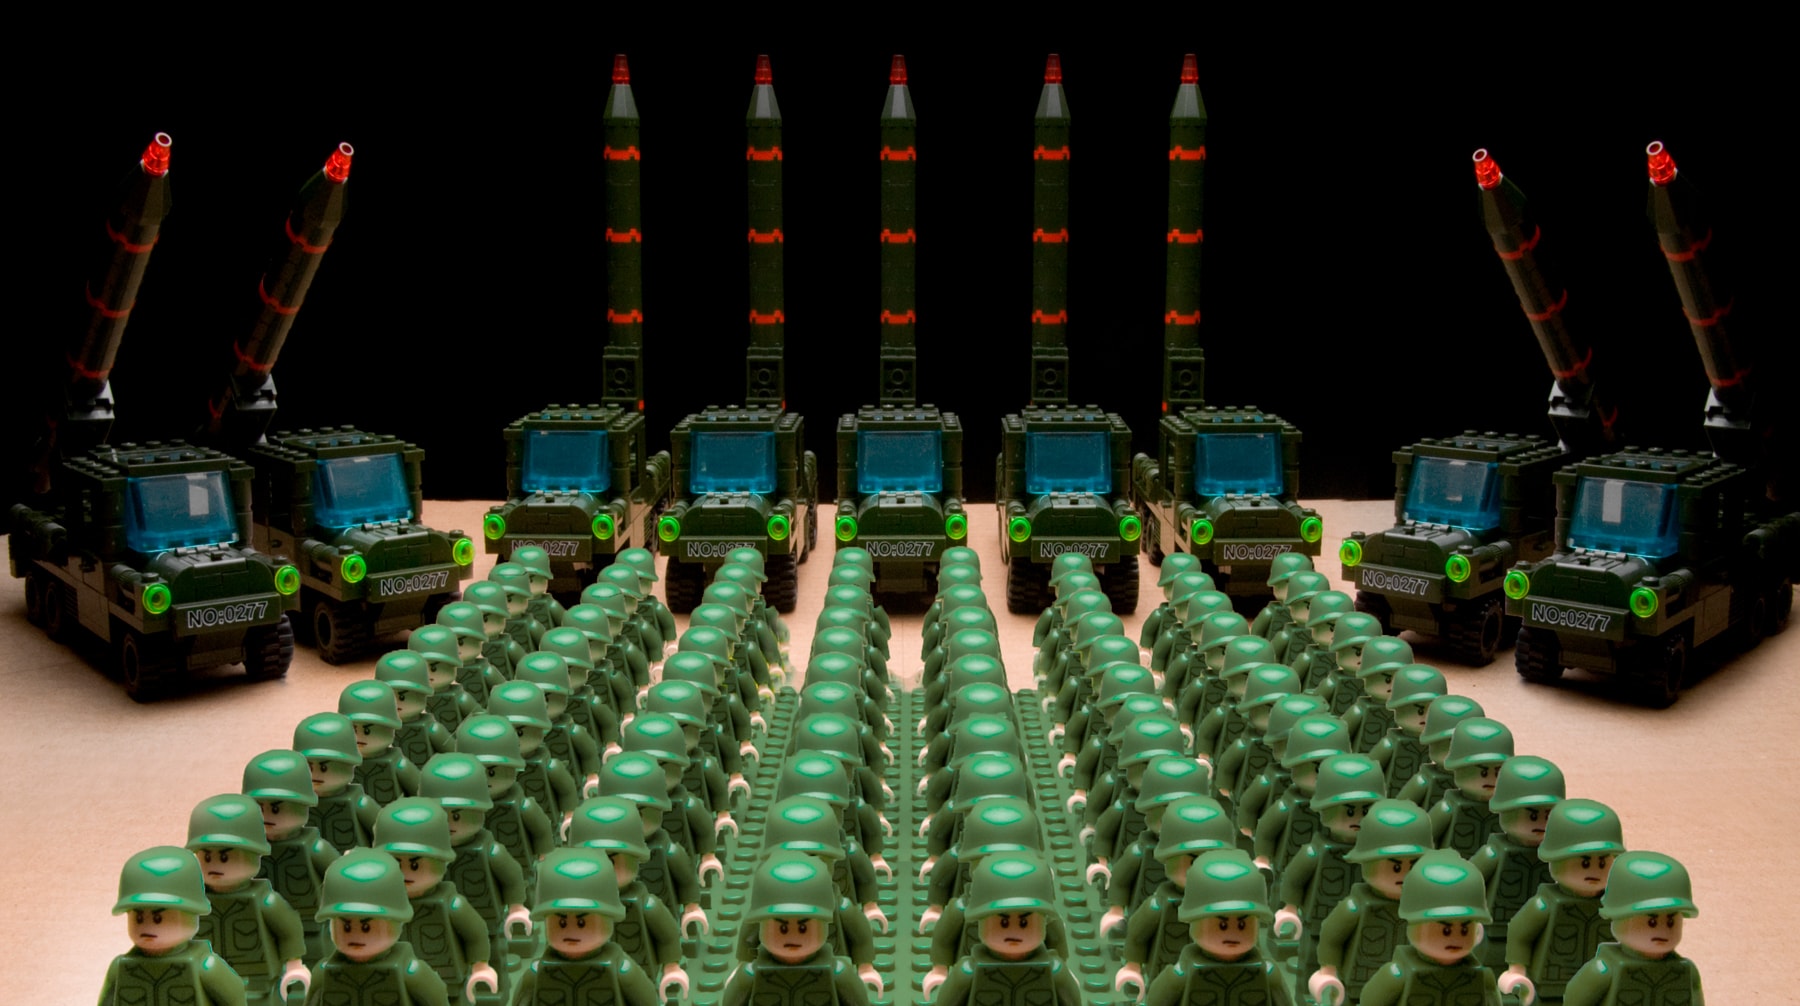 Соединенные Штаты согласно новой военной доктрине готовят «маломощные заряды», которые могут сломать систему сдерживания Фото: © flickr.com/alexandre nakonechnyj